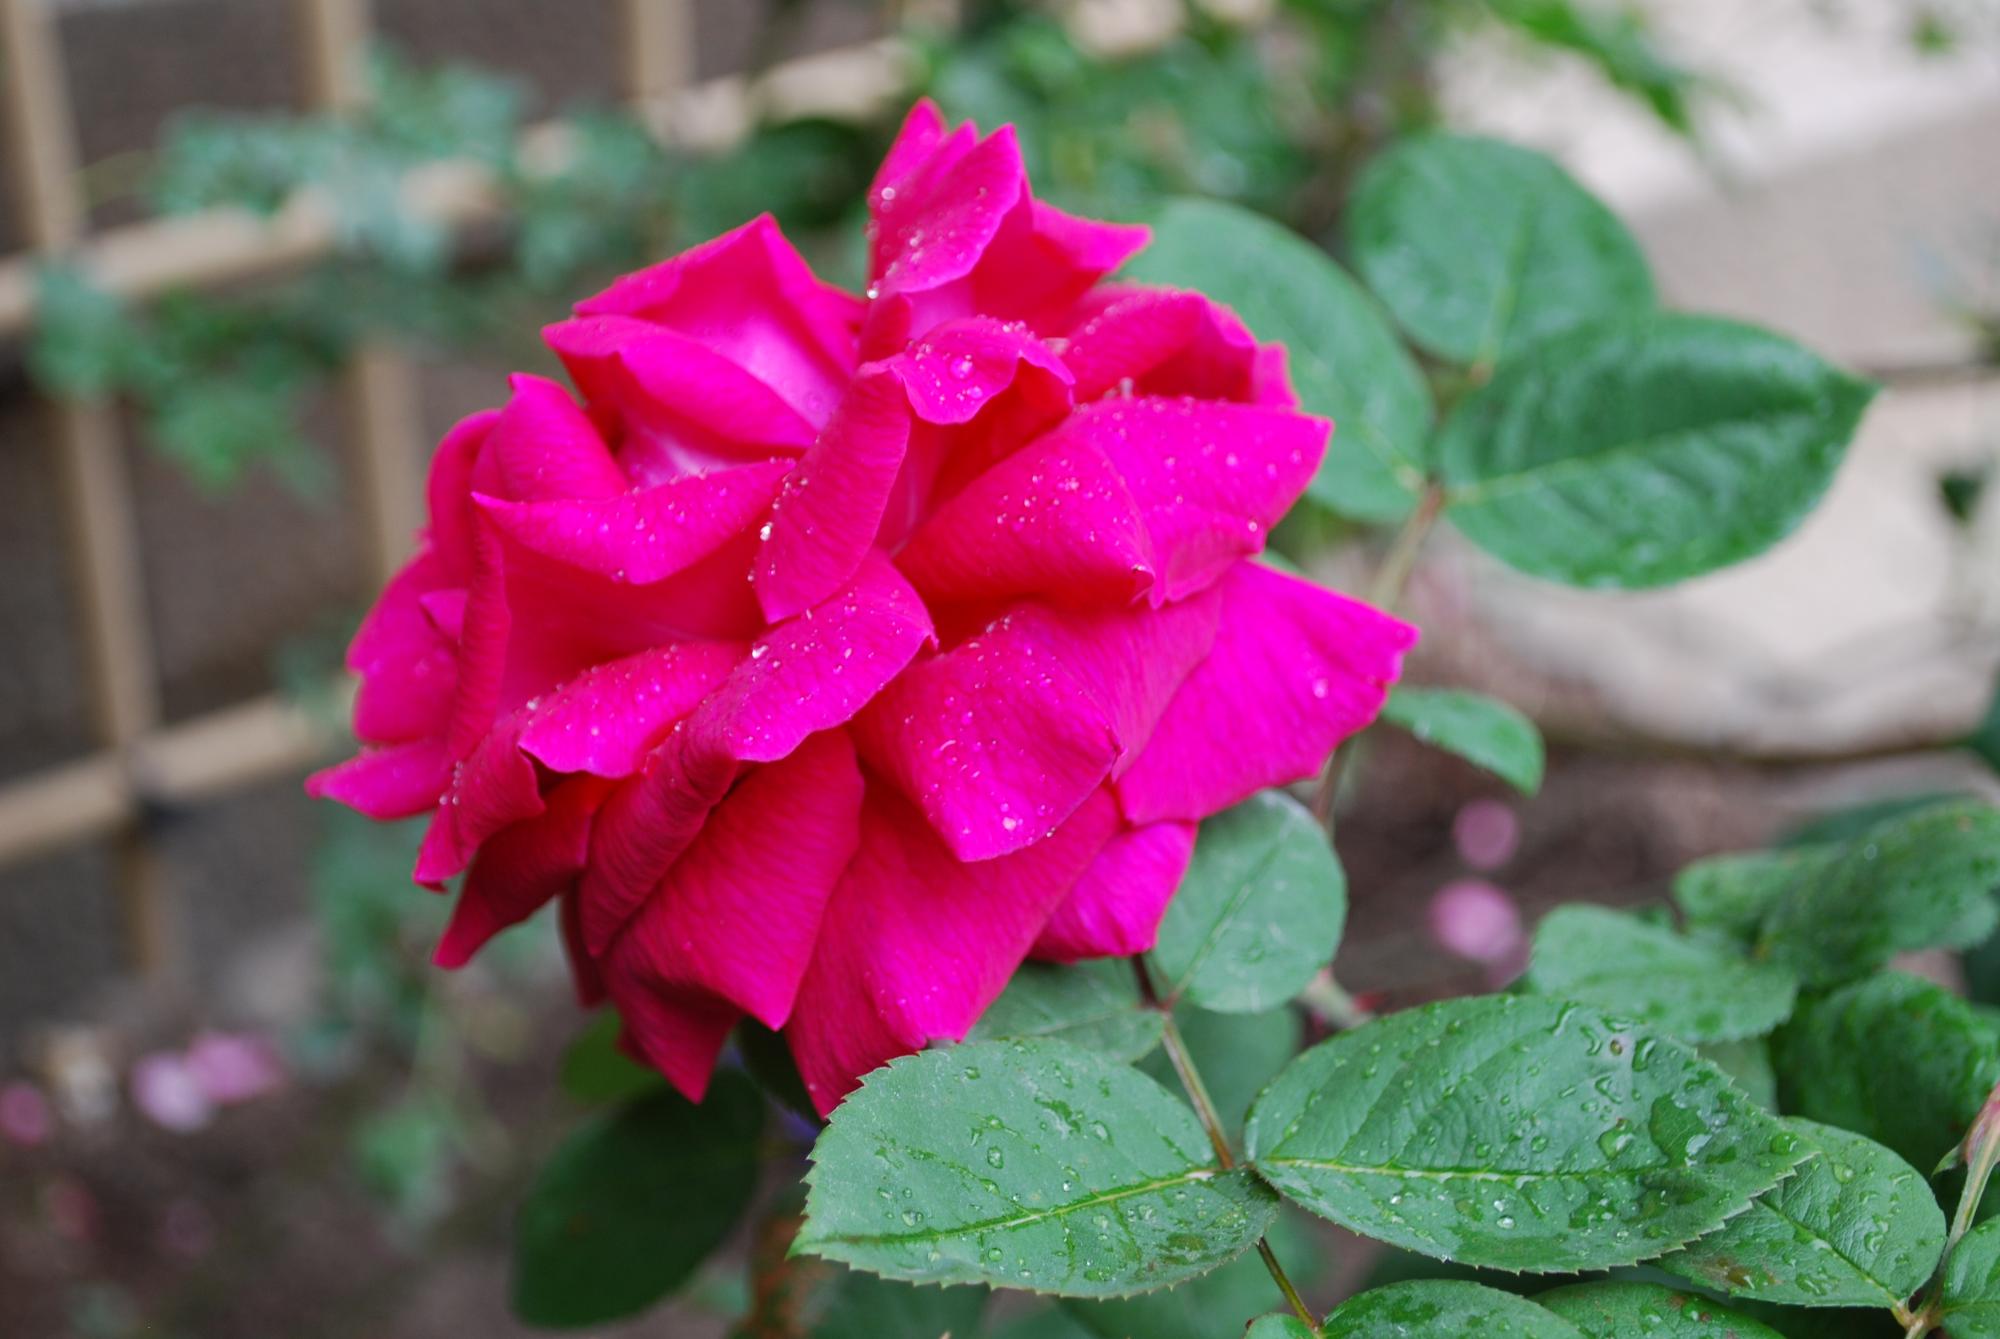 一輪の濃いピンク色のバラとその葉っぱが少し濡れて咲いている様子の写真